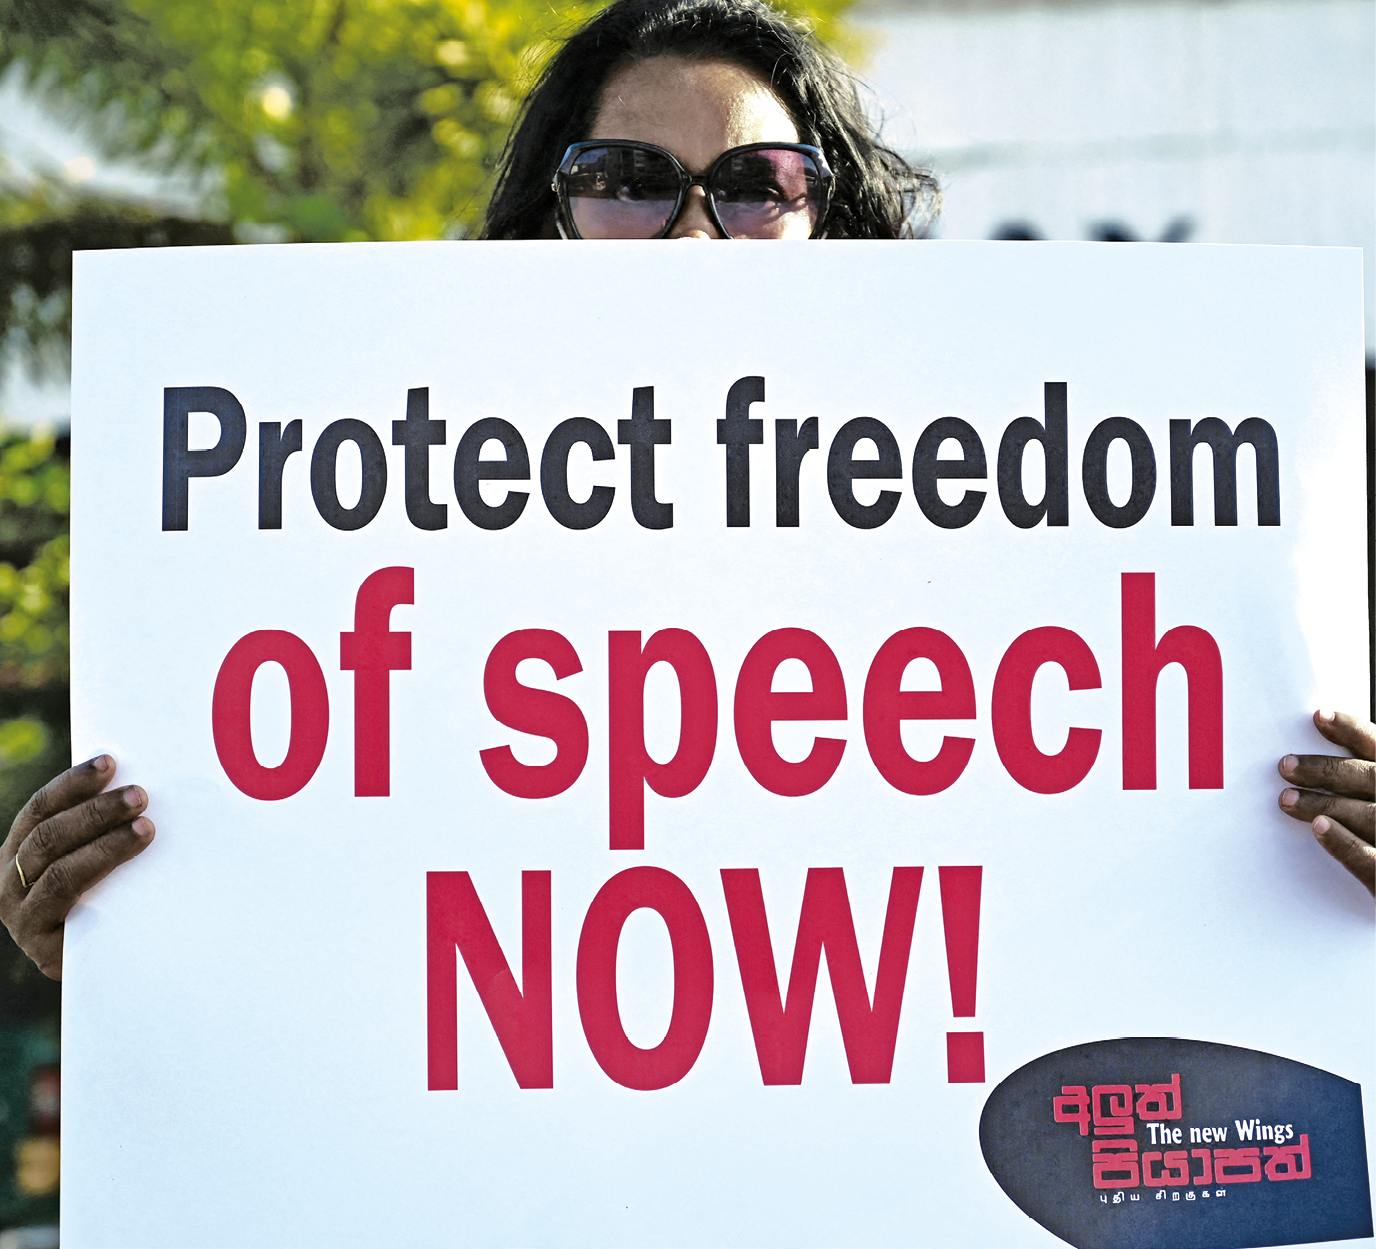 Fotografia. Uma mulher segurando um cartaz branco em frente a seu peito, deixando aparecer apenas os olhos com óculos e as duas mãos, com o texto: protect freedom of speech now!